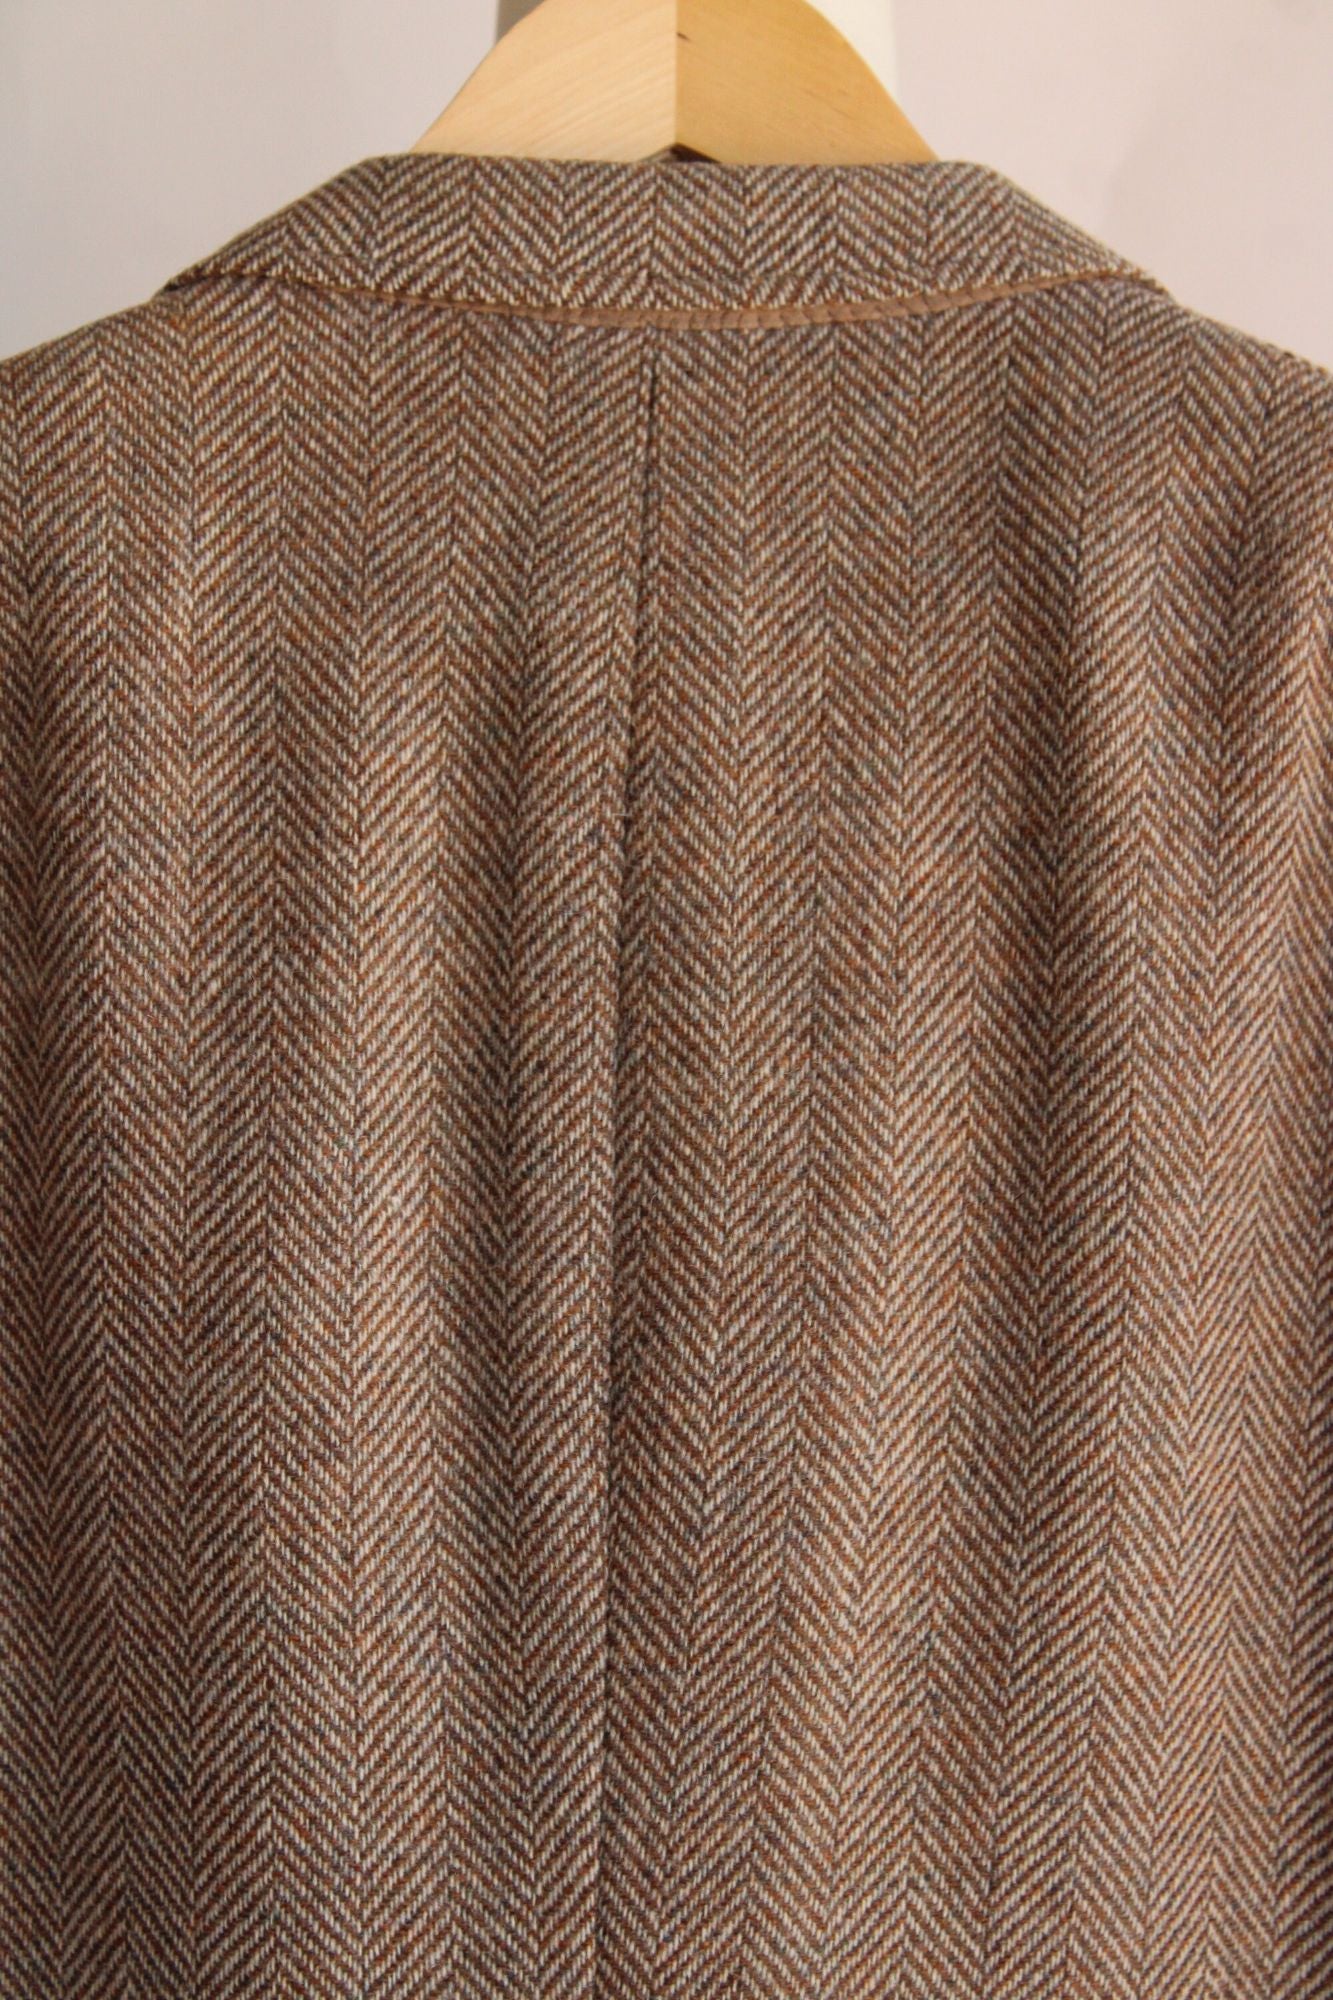 Vintage 1960s 1970s Mens Cricketeer Geo Lasky Brown Wool Tweed Jacket